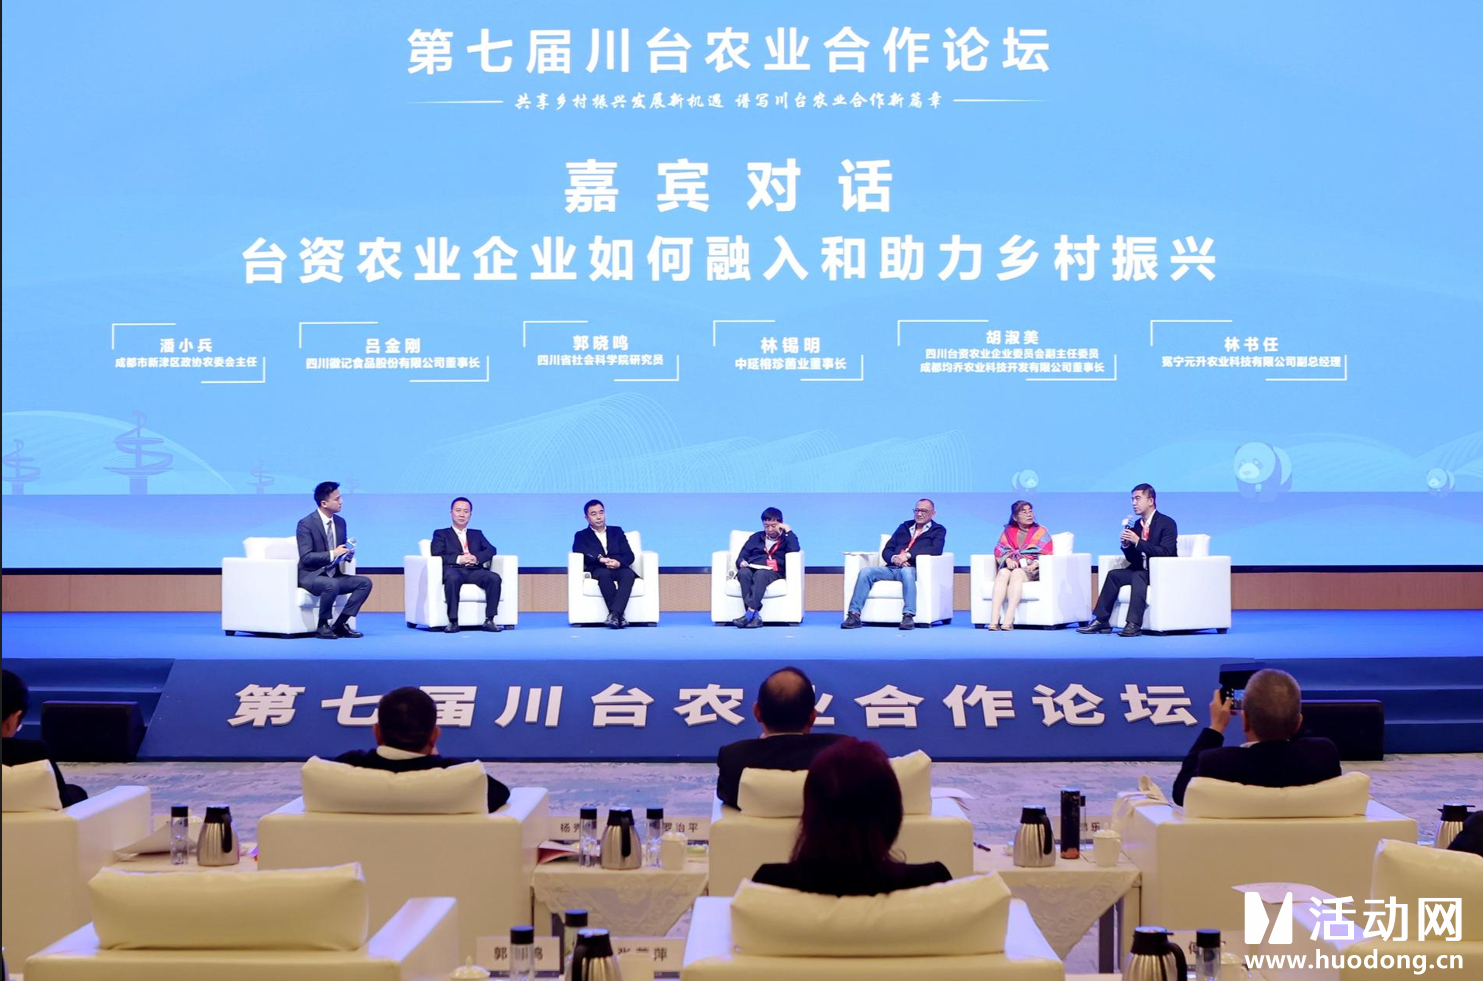 第七届川台农业合作论坛在蓉举行 台胞聚焦大陆乡村机遇